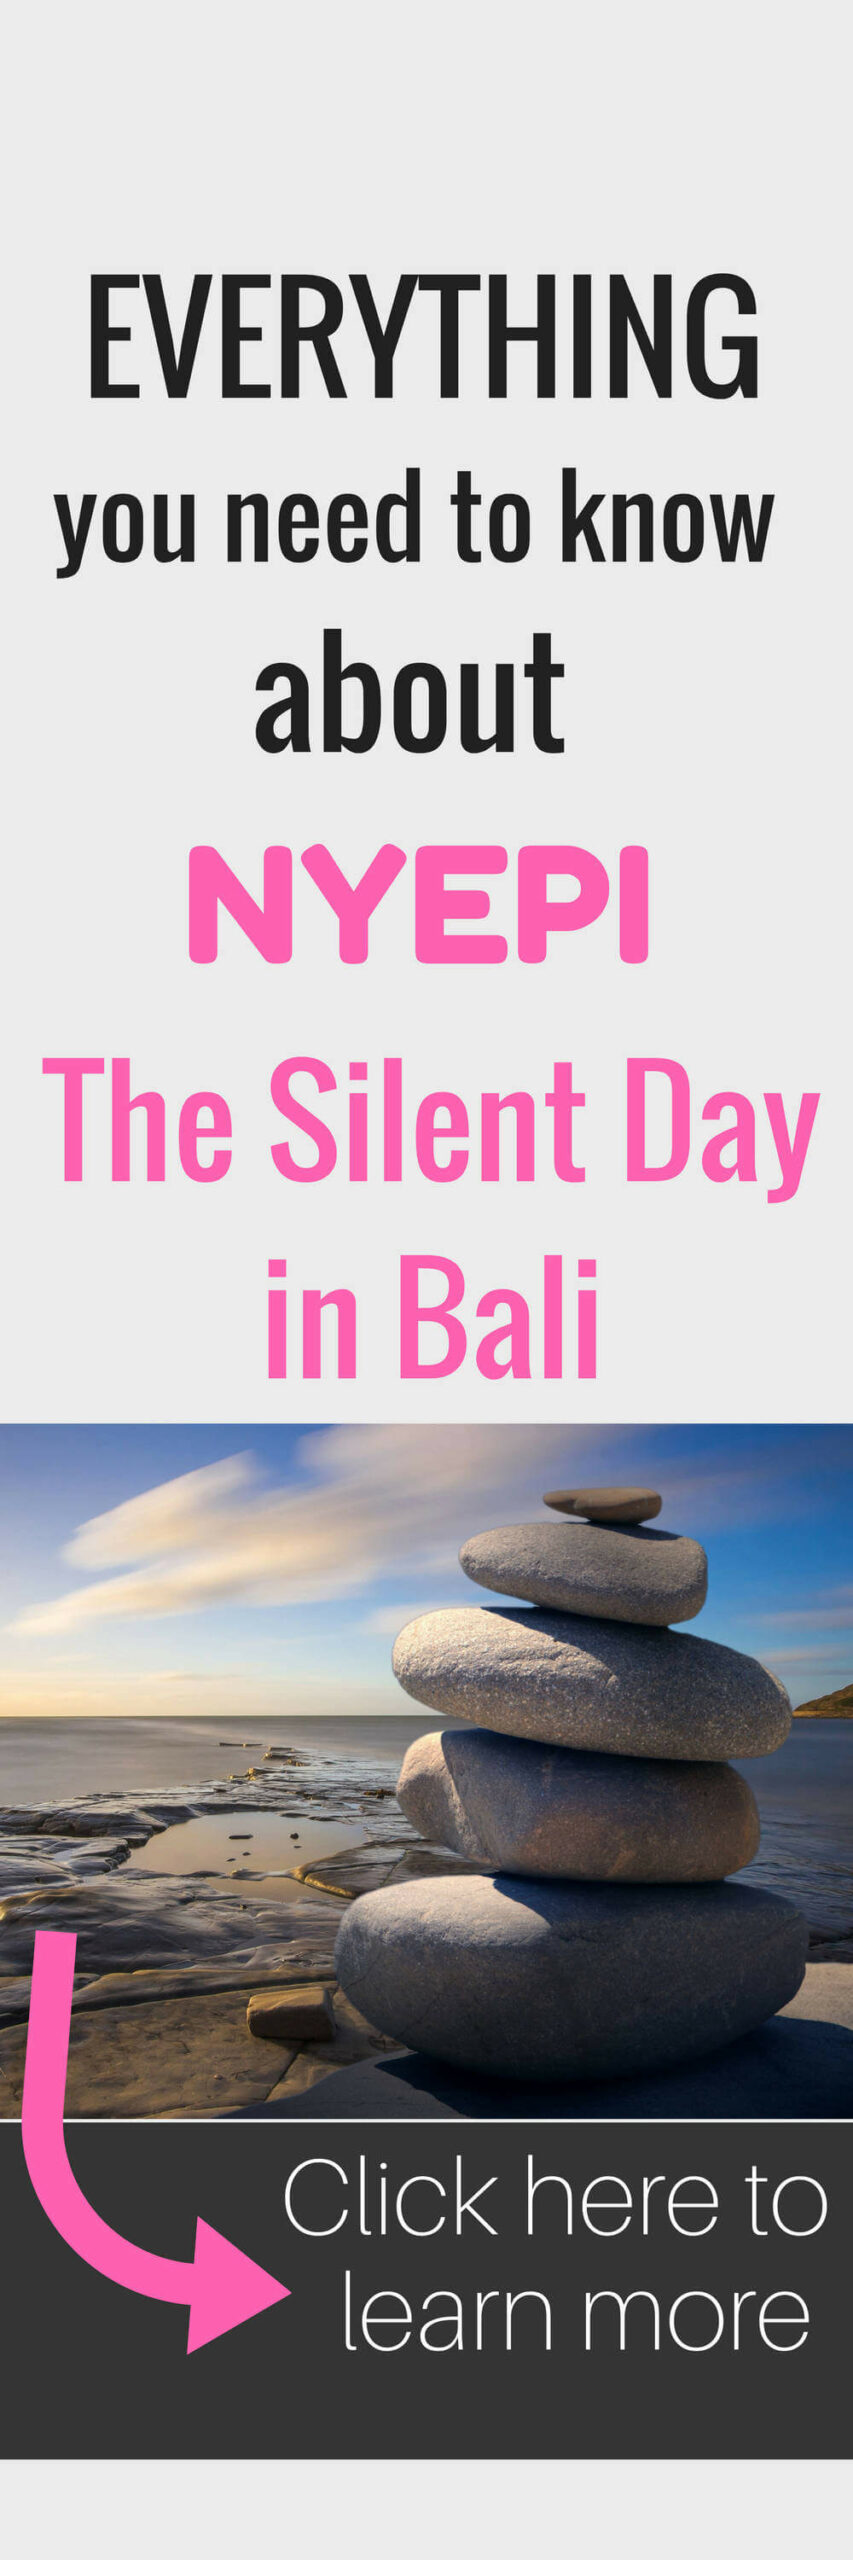 Nyepi - DíA Silencioso De Bali